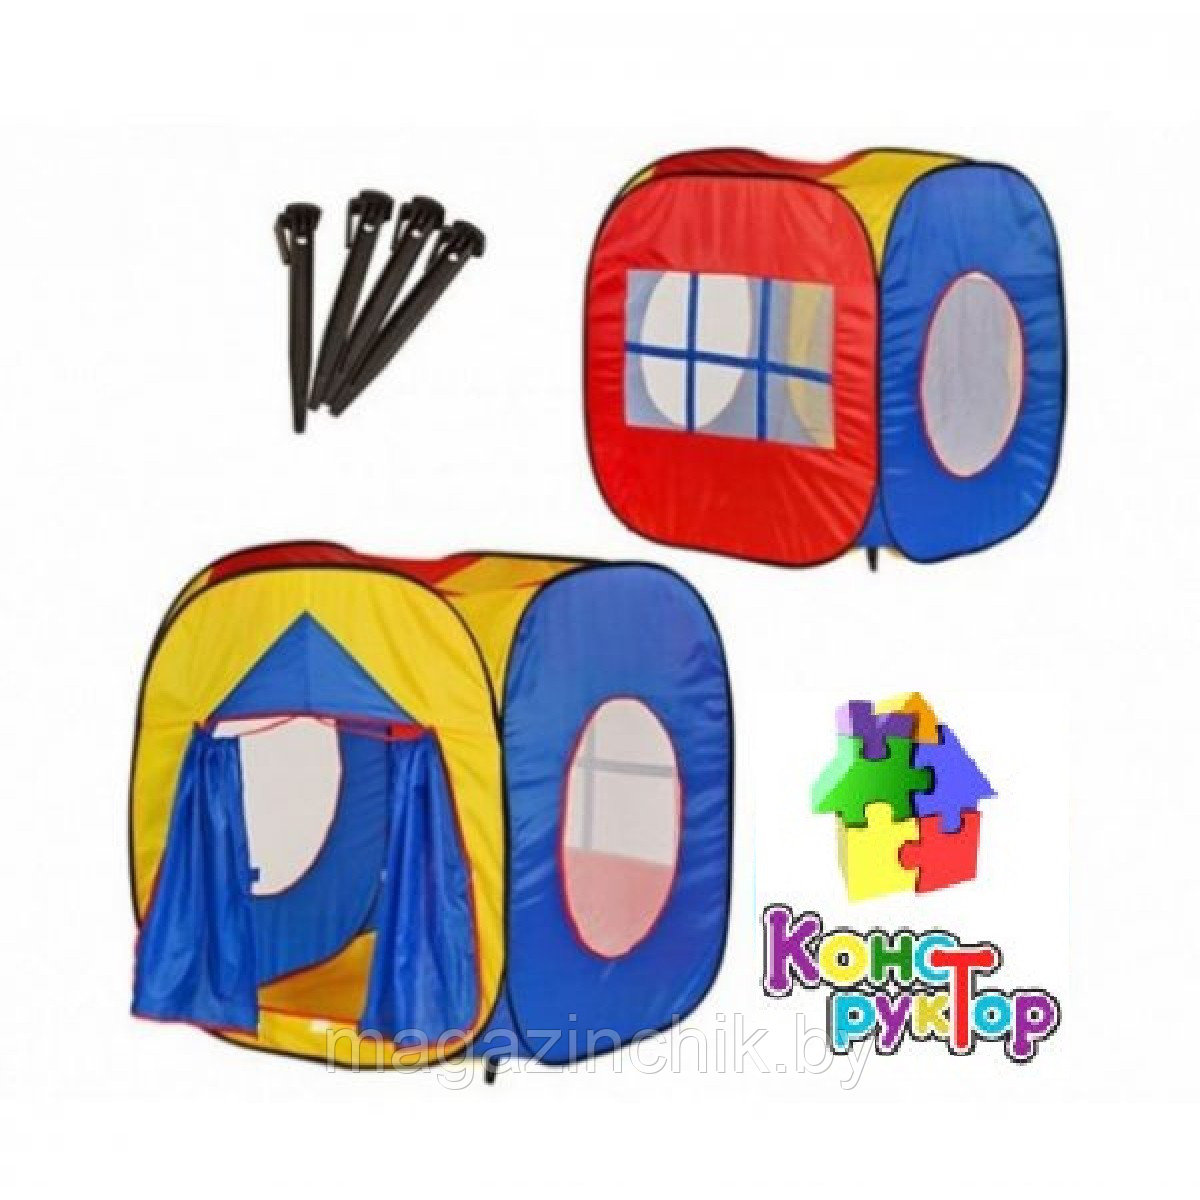 Детская палатка 5016 Шатер - игровой домик.